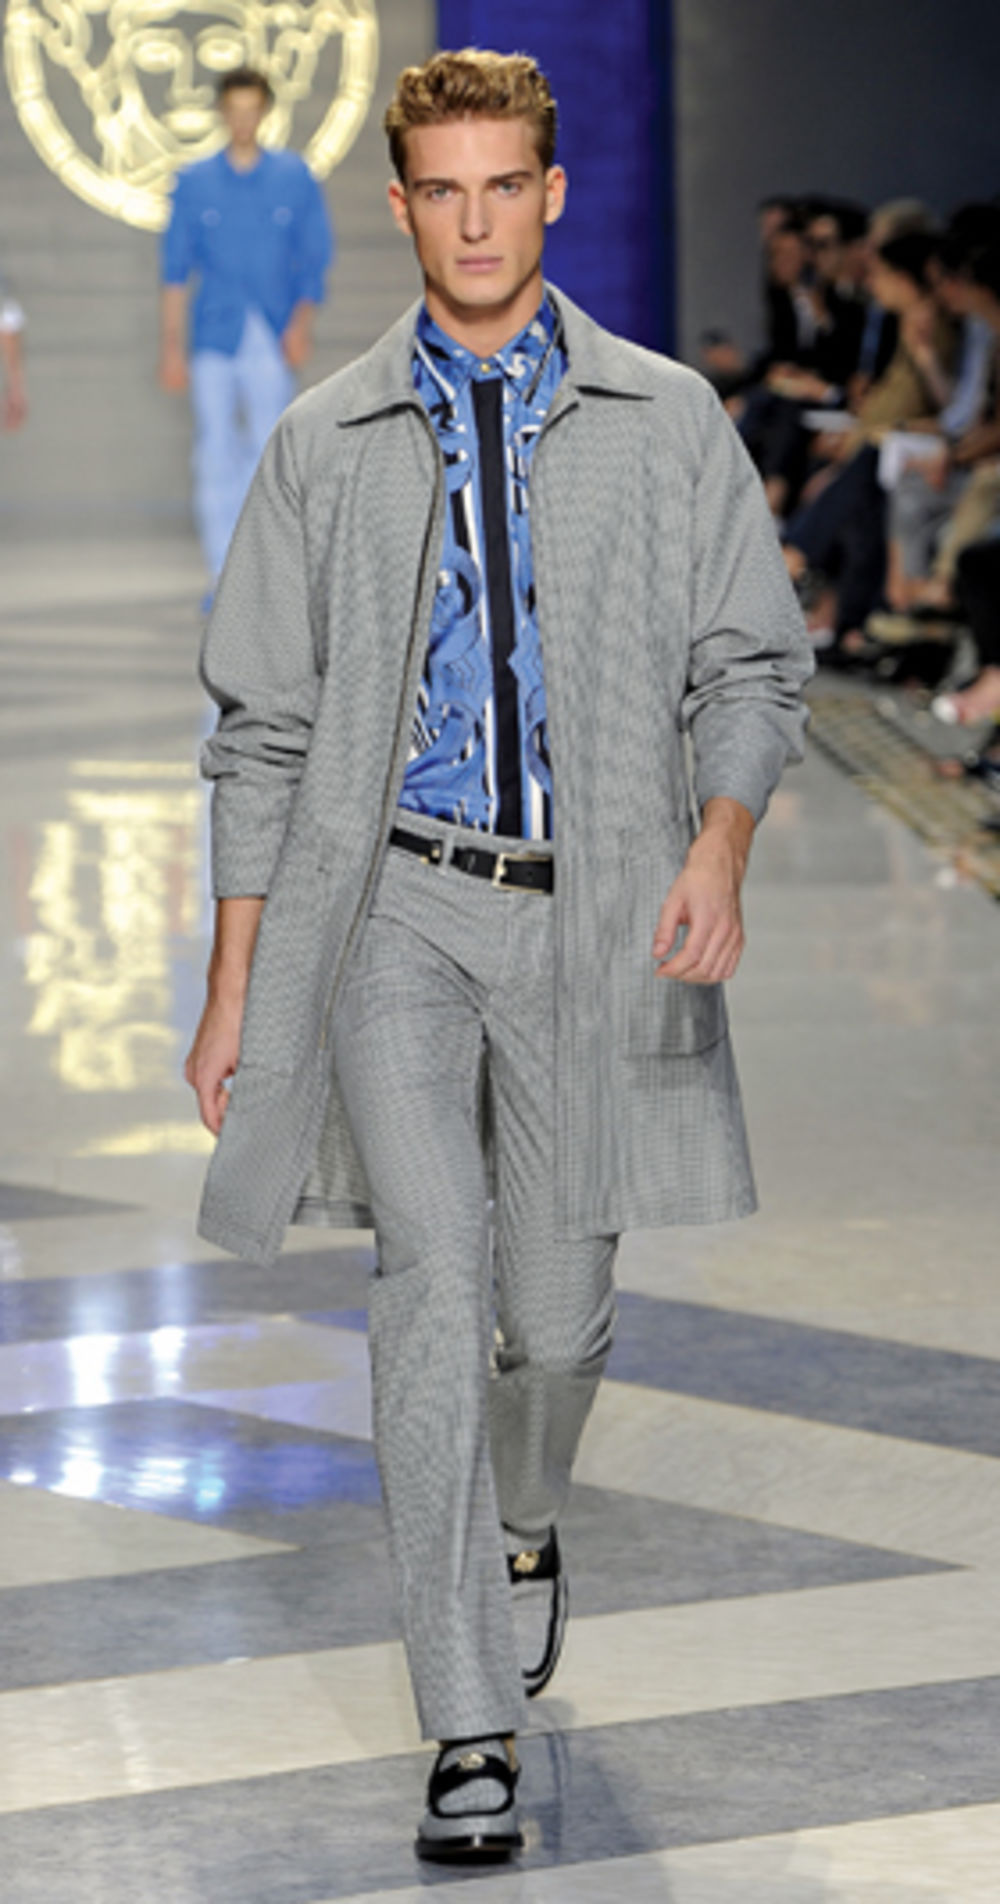 Milanska Nedelja mode namenjena jačem polu počela je novom kolekcijom Burberry brenda, a zanimljive modele predstavili su i kreatori iz modnih kuća D&G, Versace i Gucci. Milano je pored romantike predstavio i visoku modu za jesen-zimu 2011/2012. godine, a